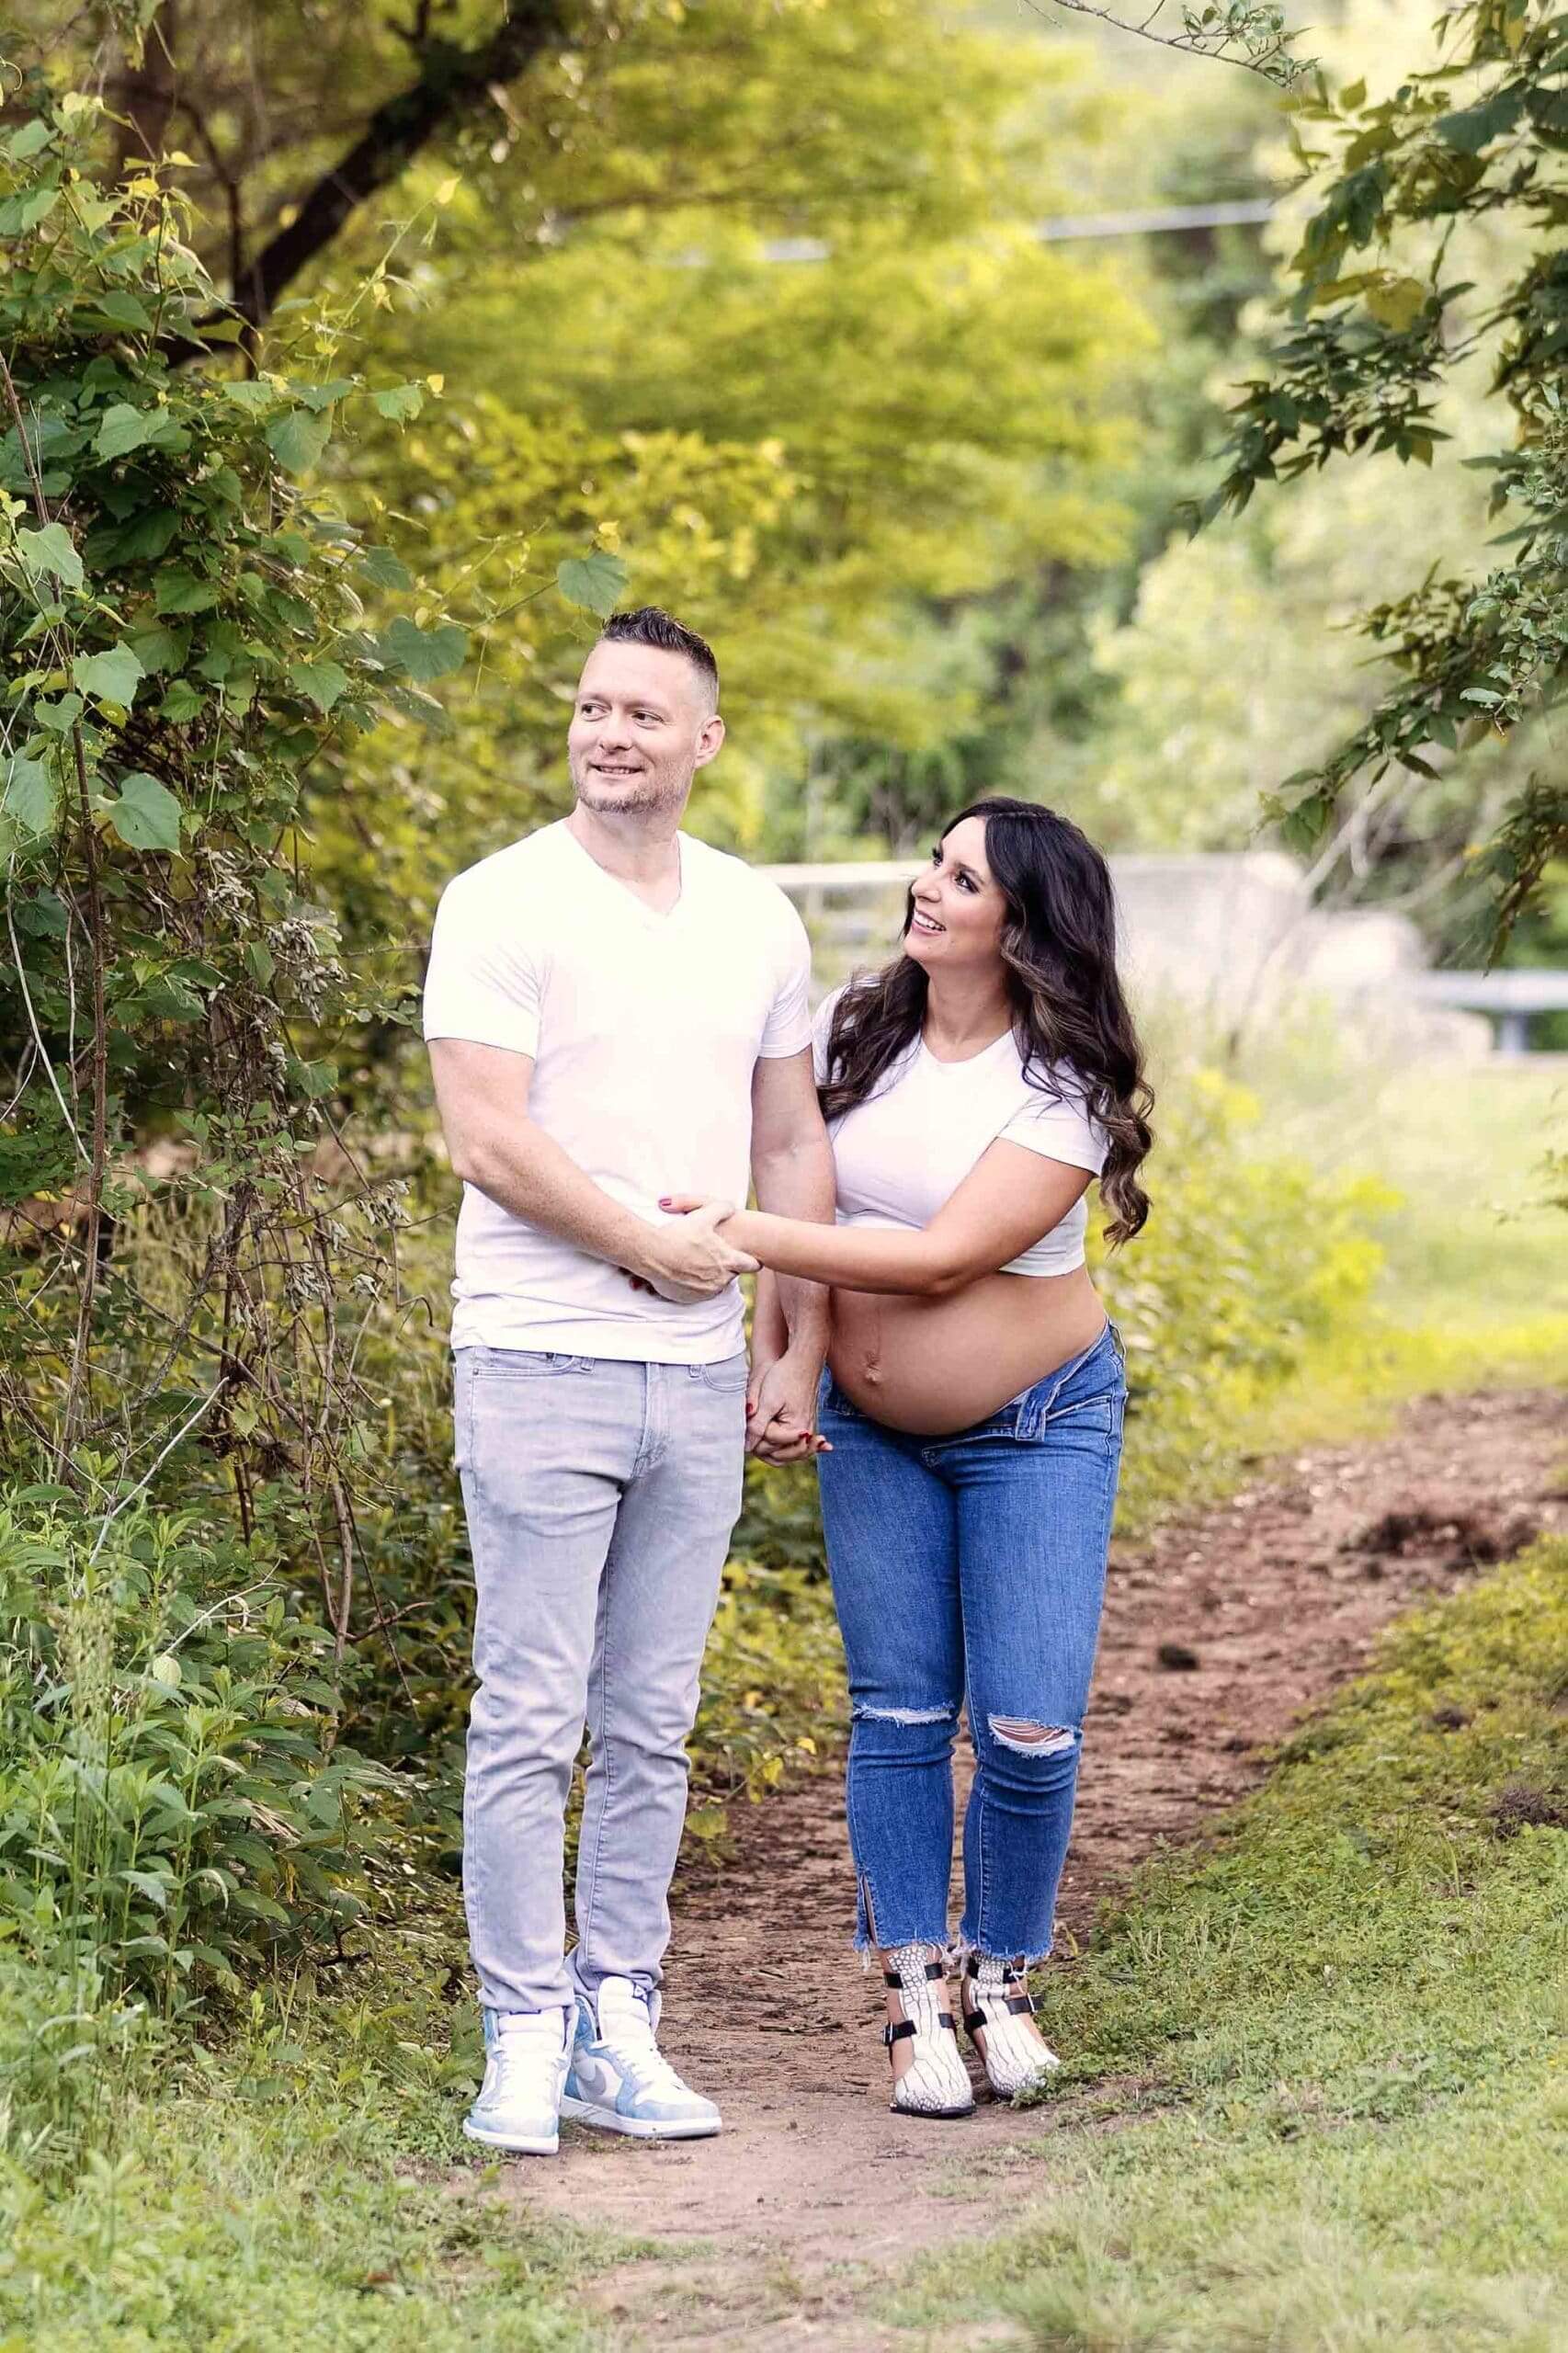 Maternity photo shoot ideas outdoors